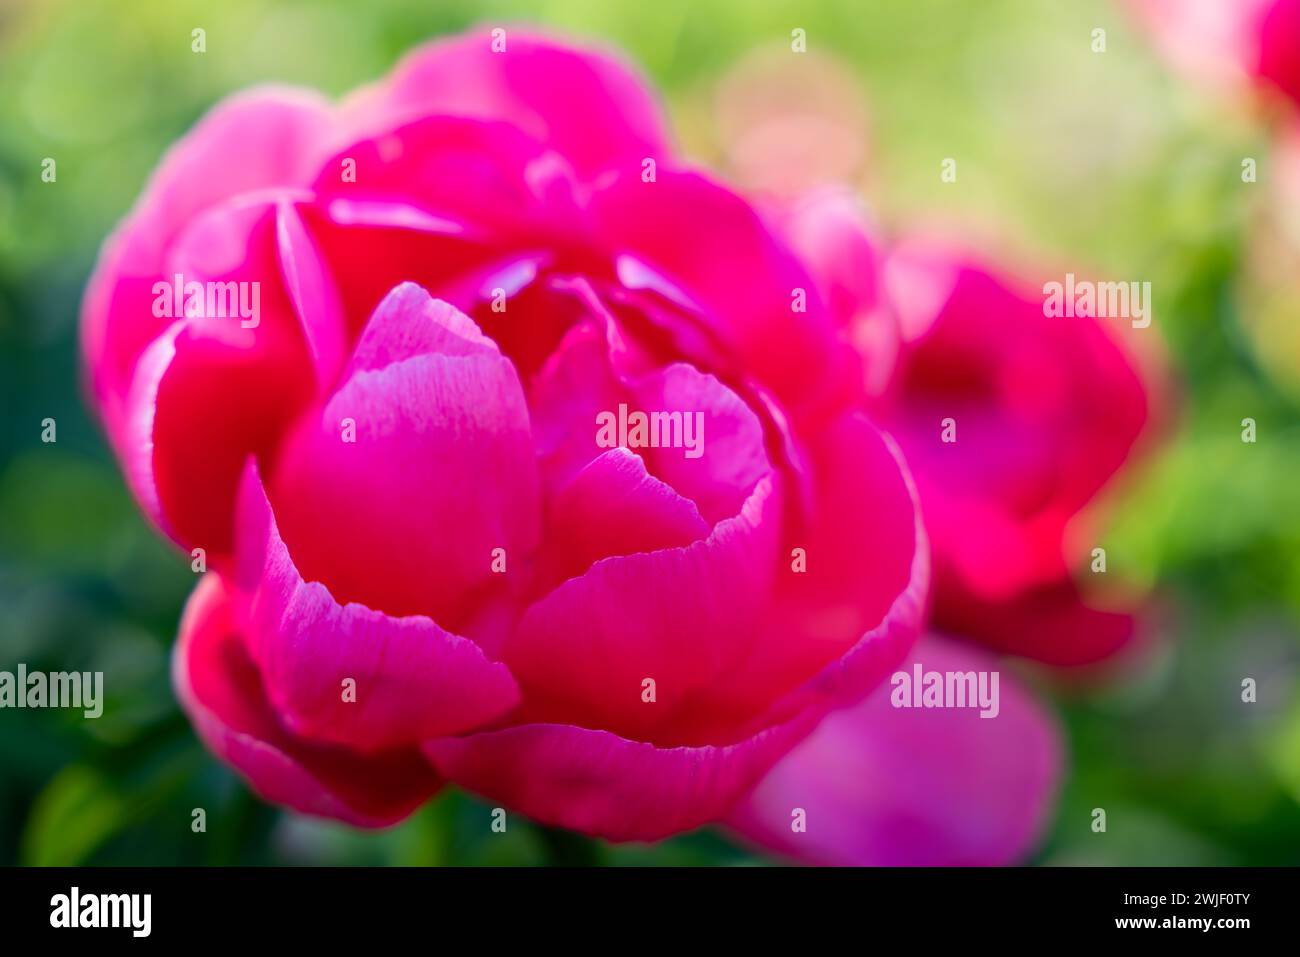 Sfondo floreale. Peony (Paeonia) – la rosa senza spine. Colore rosso-rosa-viola-rosso brillante - colore fucsia. Messa a fuoco morbida. Foto Stock